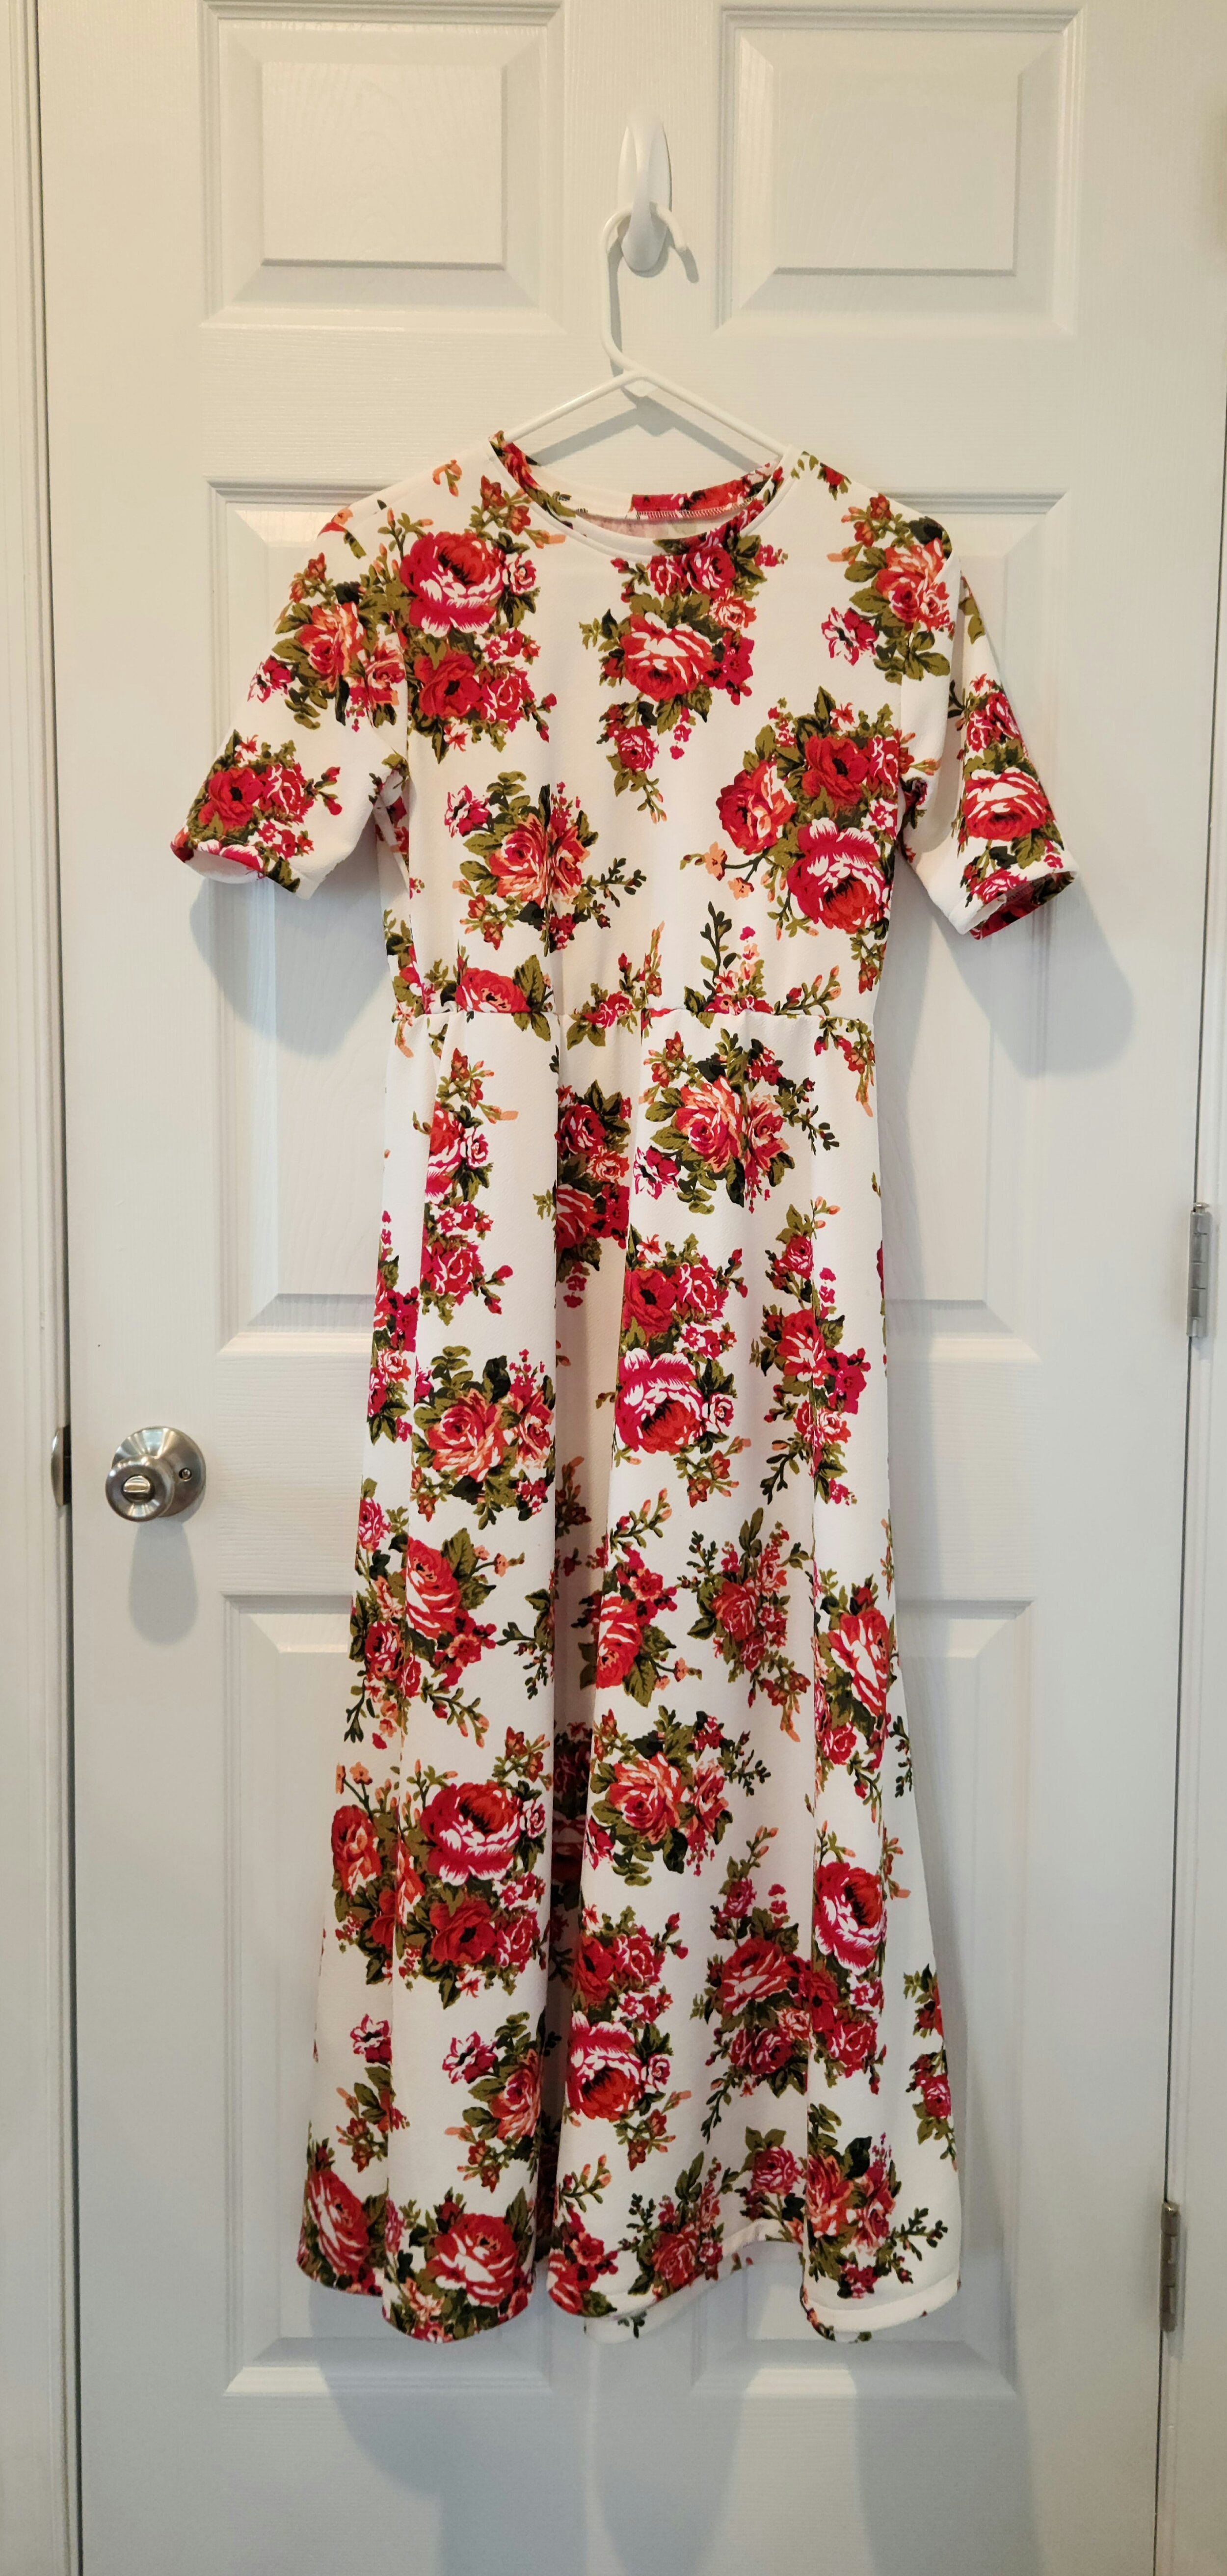 Size 14 Women - Princess Style Cotton Dress — Just Skirts by Lori